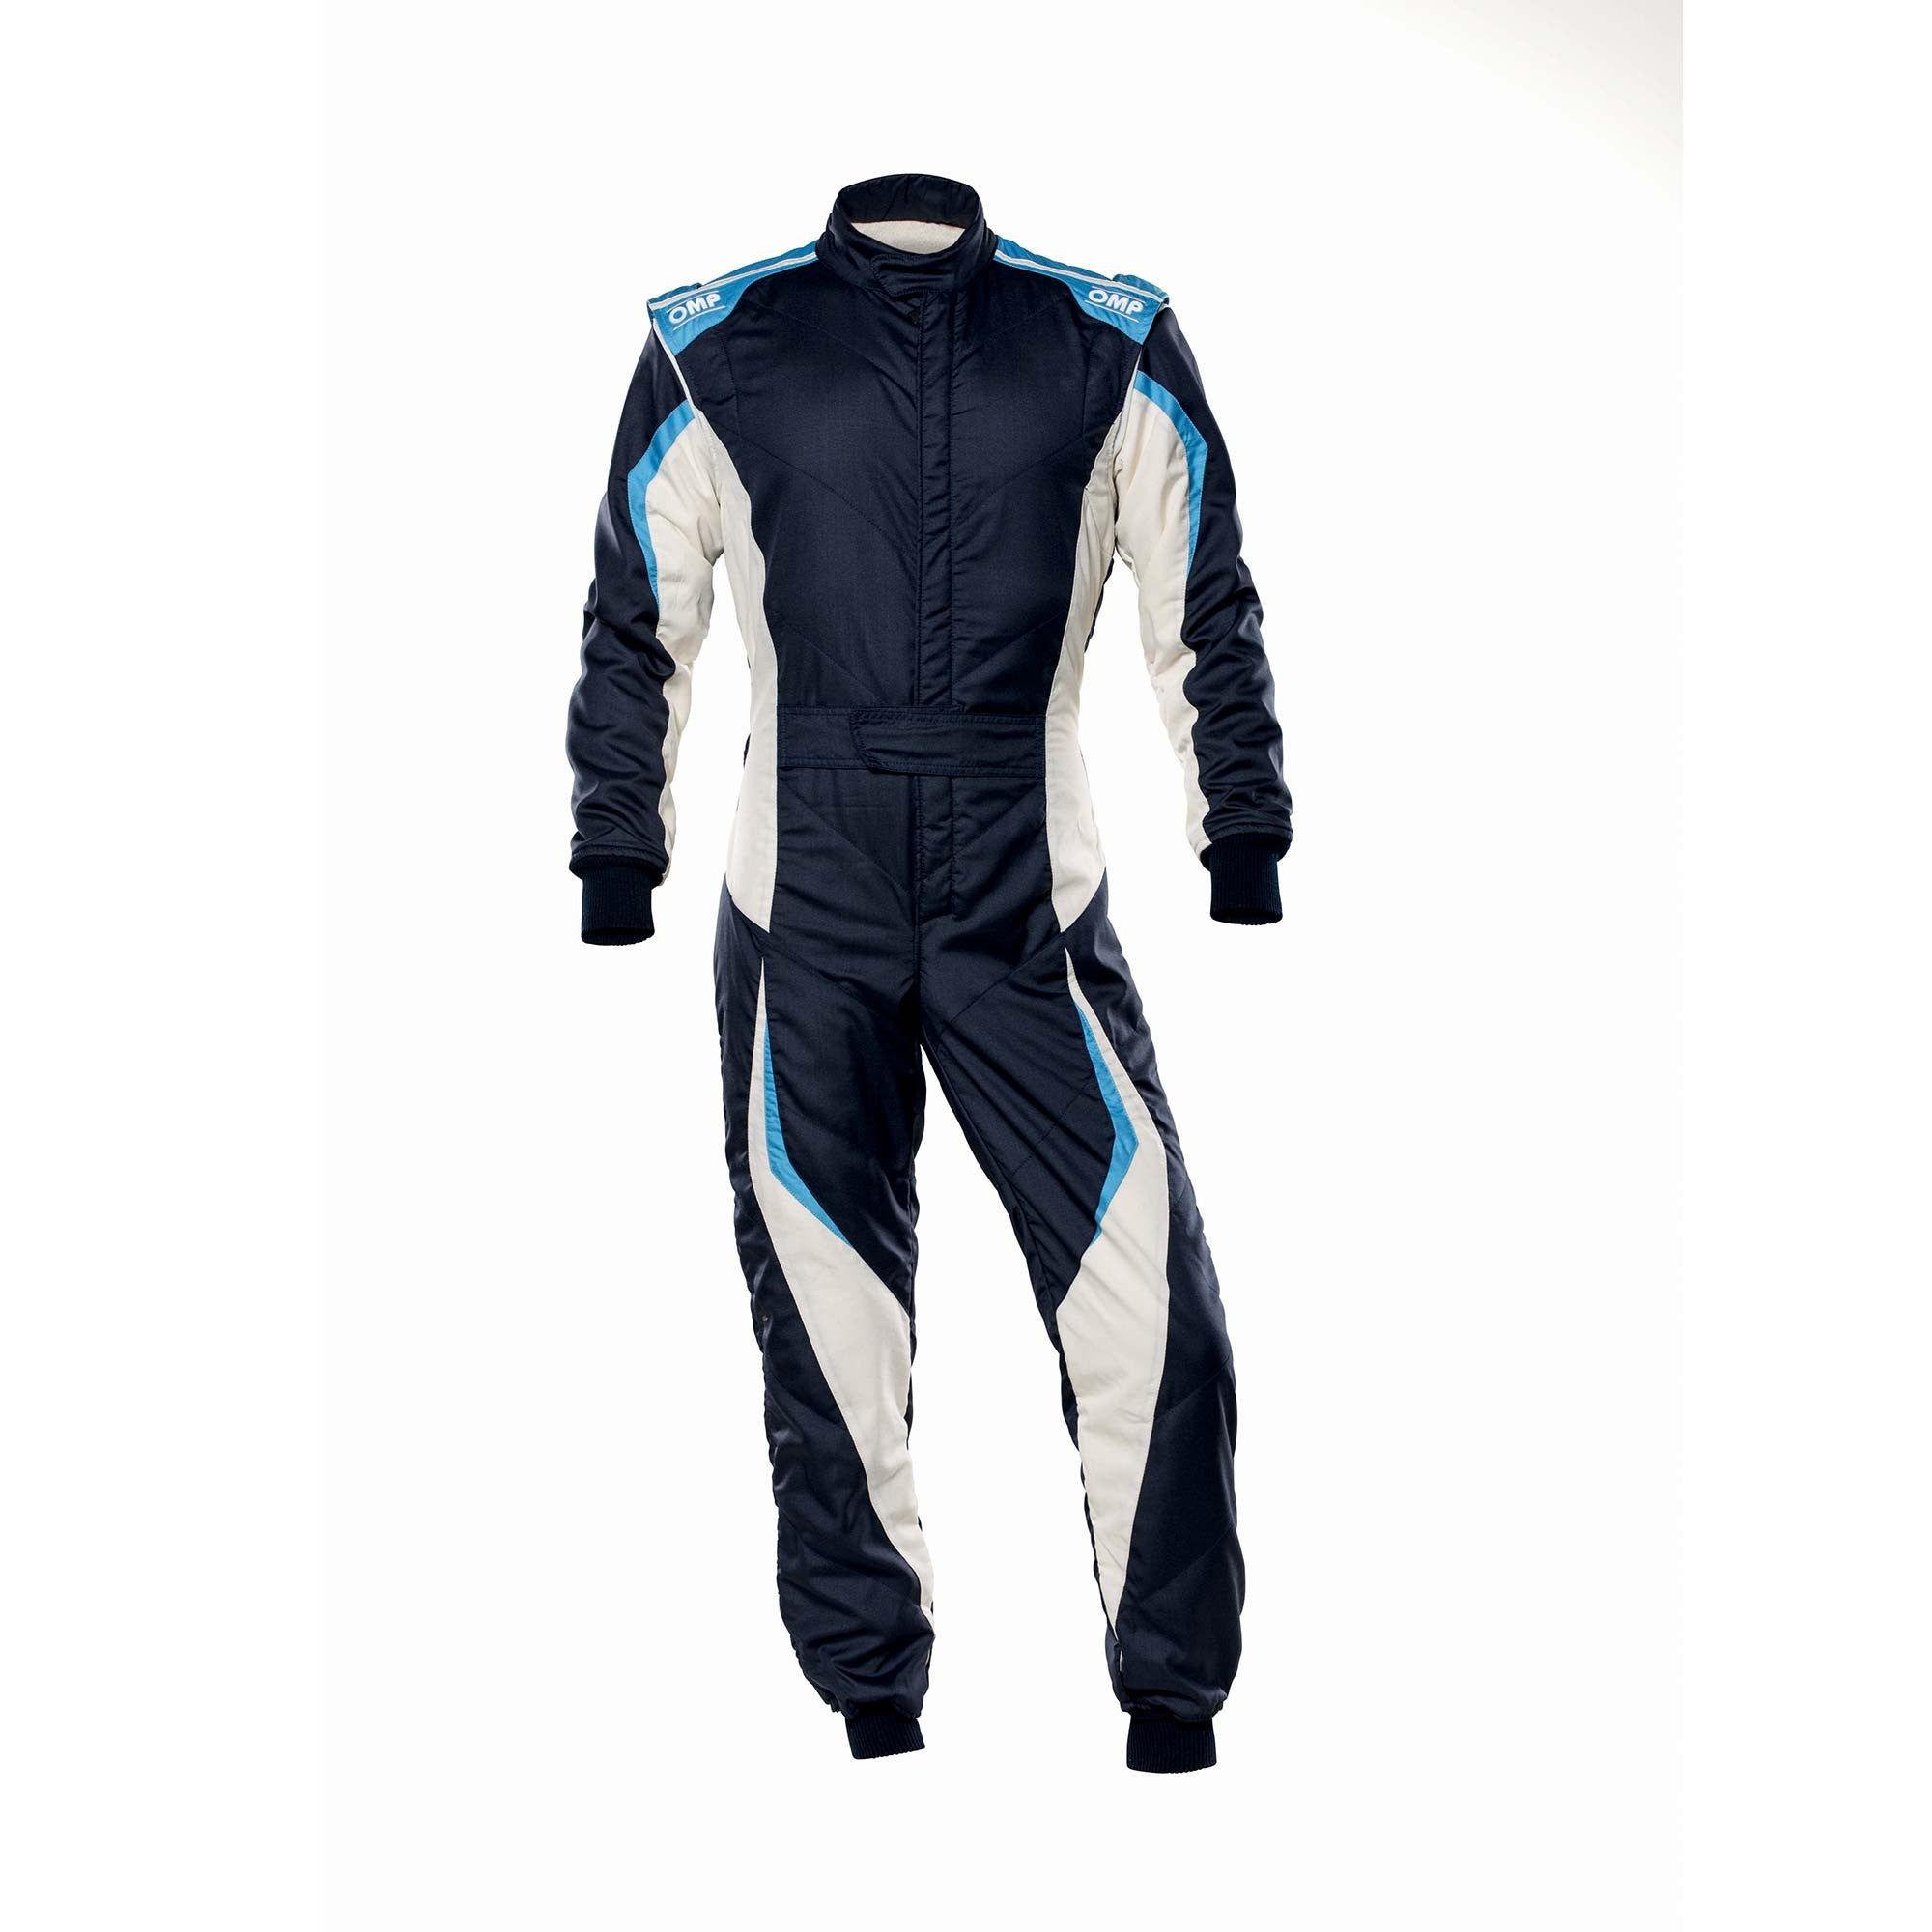 OMP IA0-1859-B01-246-52 Racing suit TECNICA EVO MY2021, FIA 8856-2018, navy blue/white/grey/cyan, size 52 Photo-0 